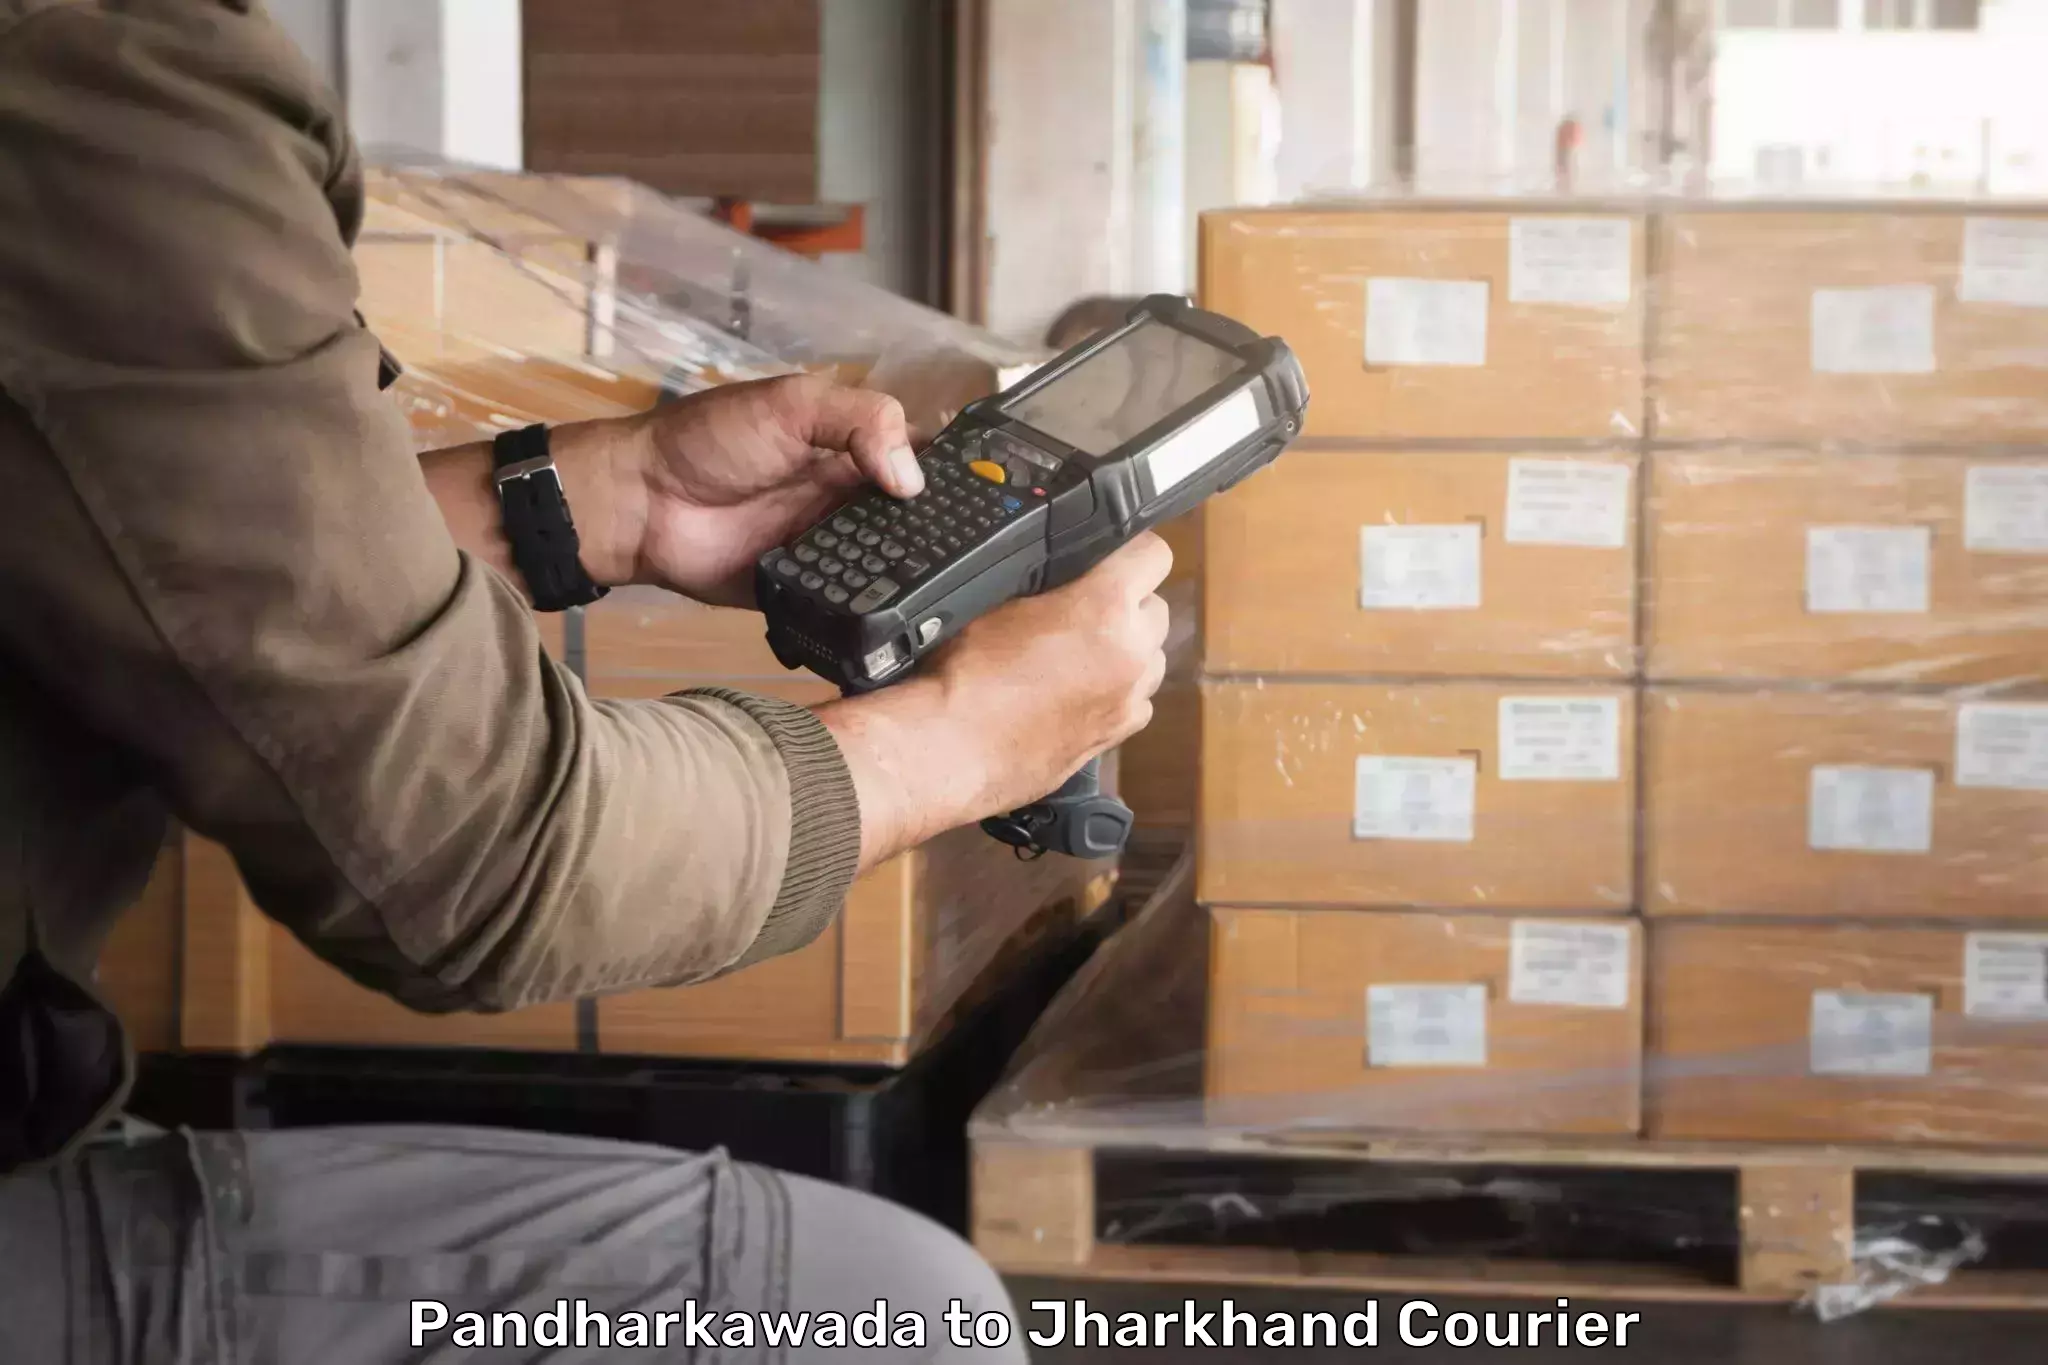 International parcel service Pandharkawada to Medininagar